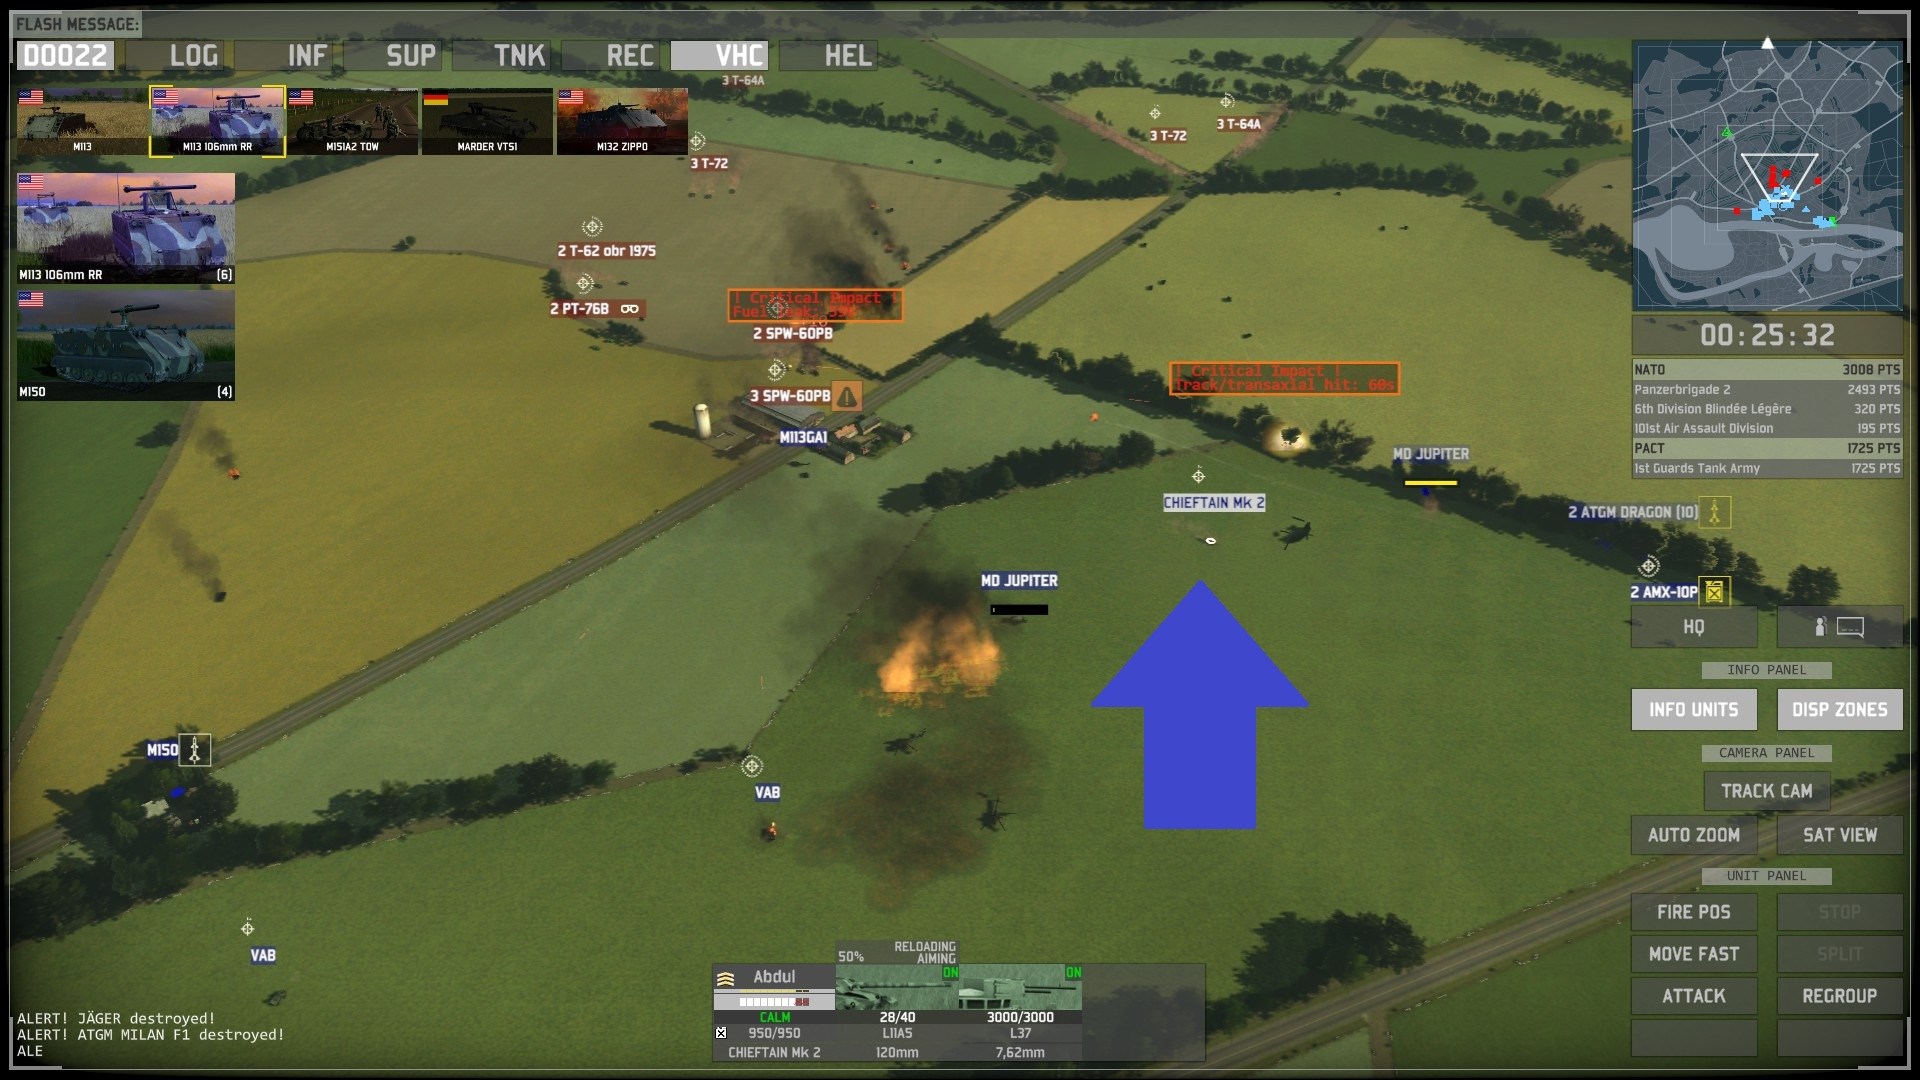 Скриншот Wargame: Trilogy (2012-2014) PC | RePack от R.G. Механики